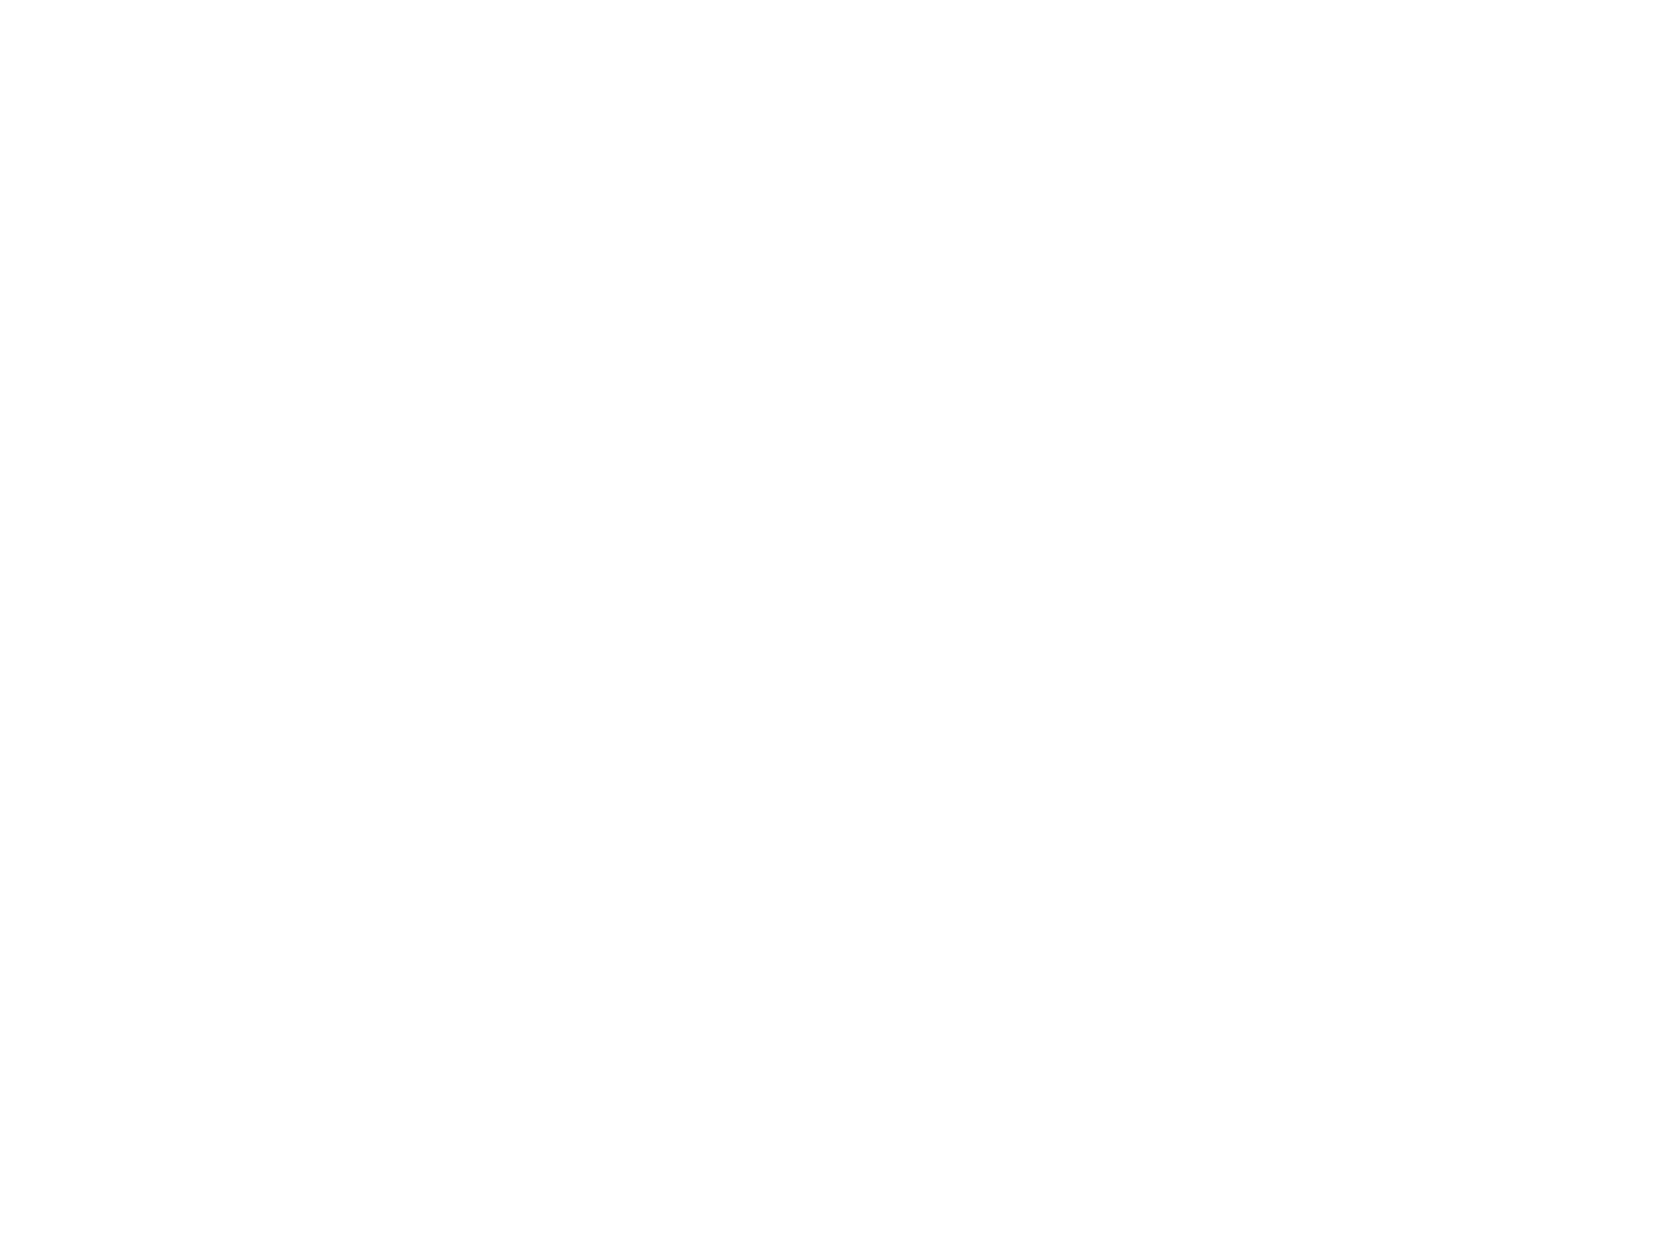 Наручные ламповые часы "Нумитрон" на лампах ИВ-16. Часы с акселерометром и RGB подсветкой. Диаметр часов 49 мм